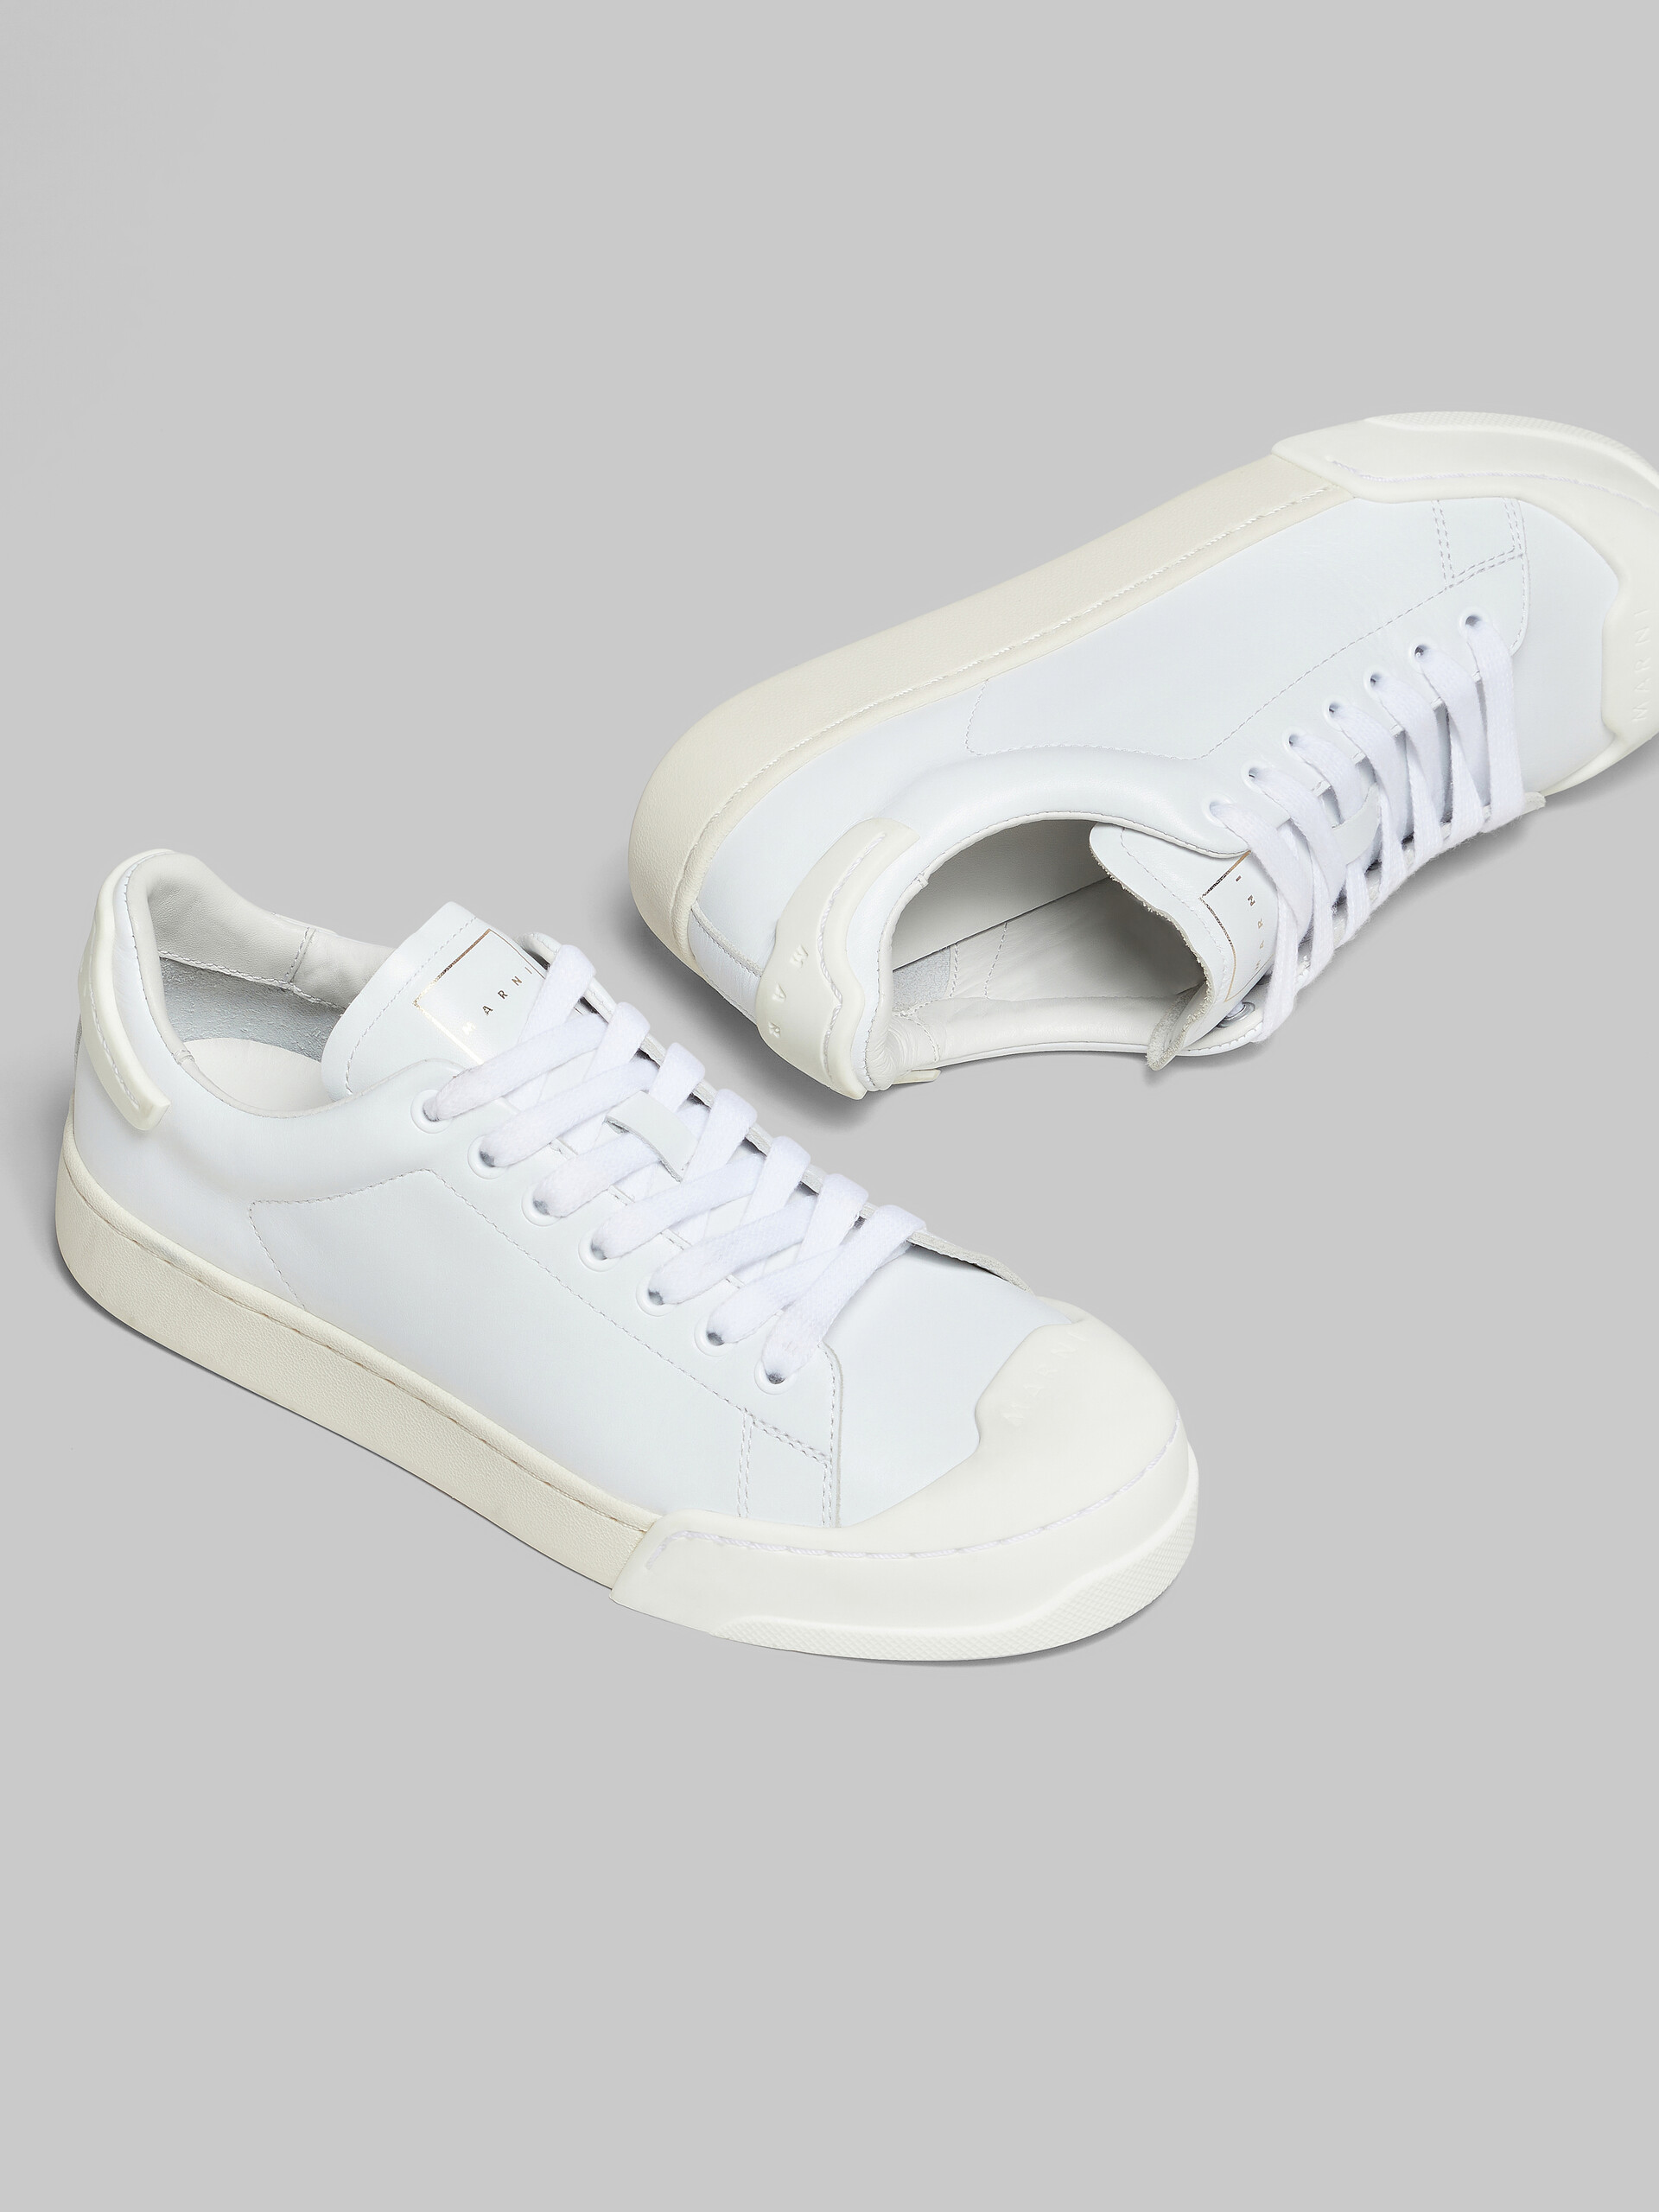 Dada Bumper sneaker in white leather | Marni